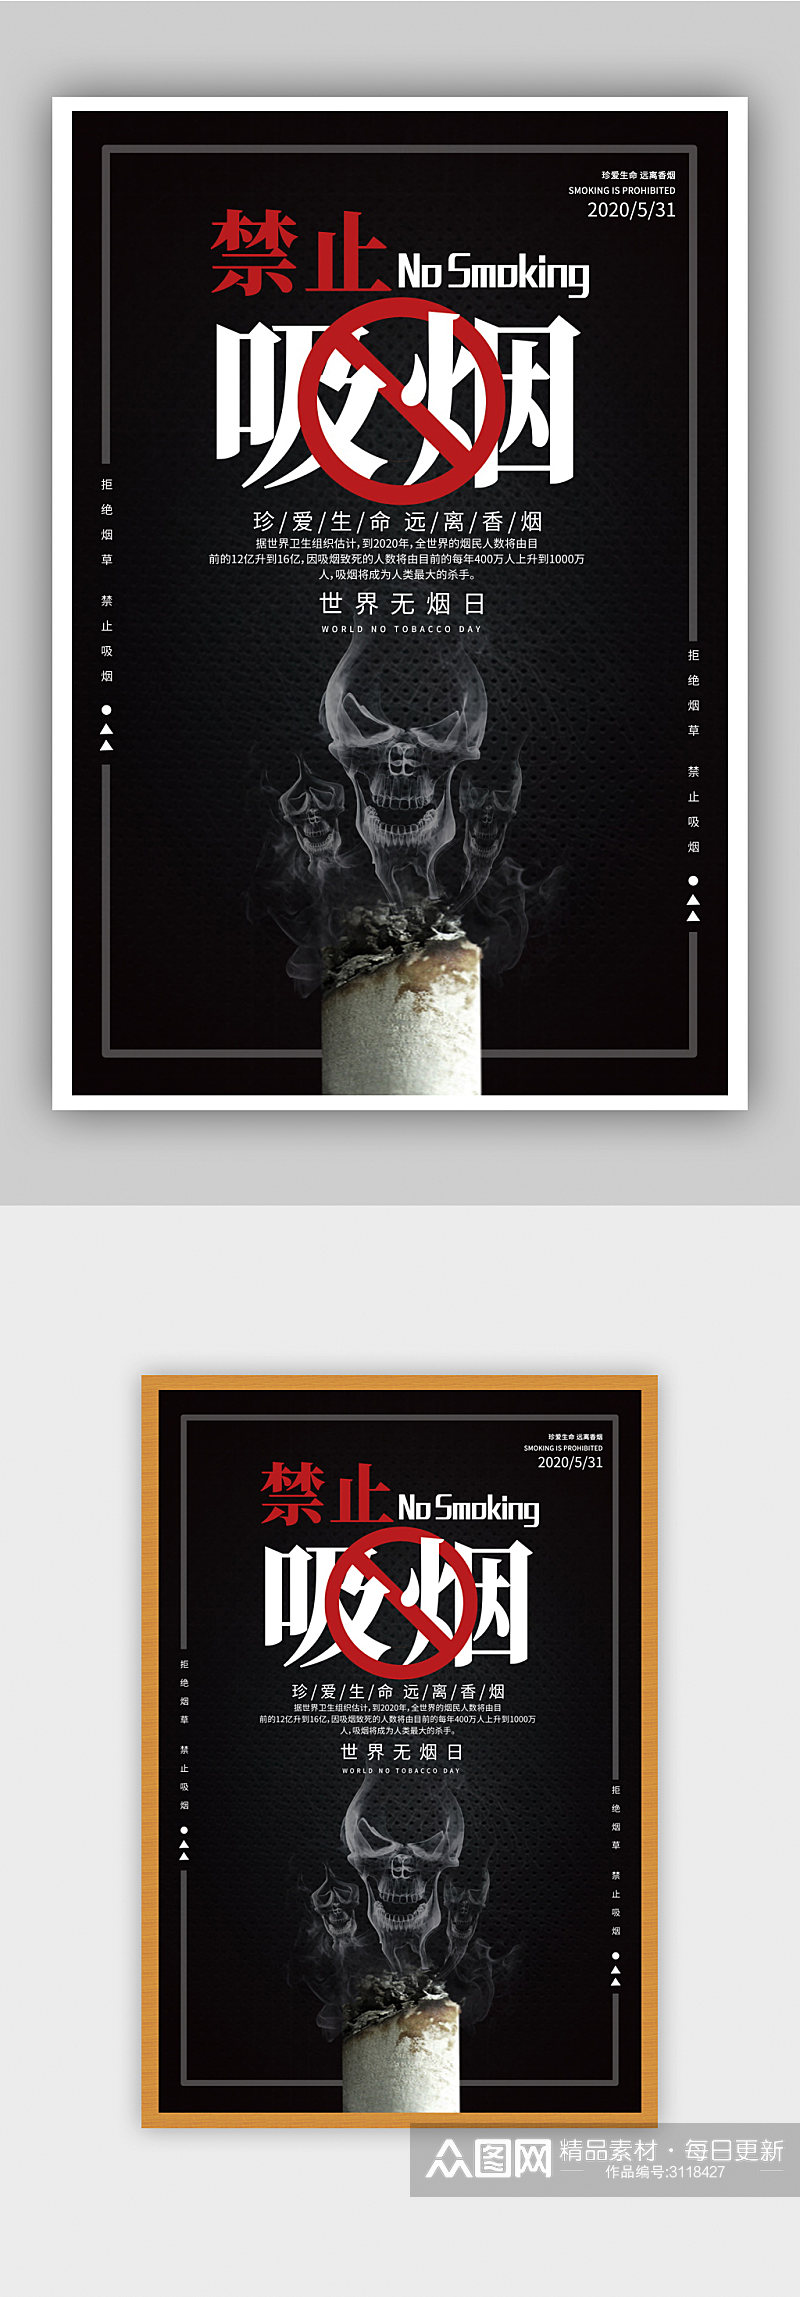 黑色时尚禁止吸烟公益宣传海报素材